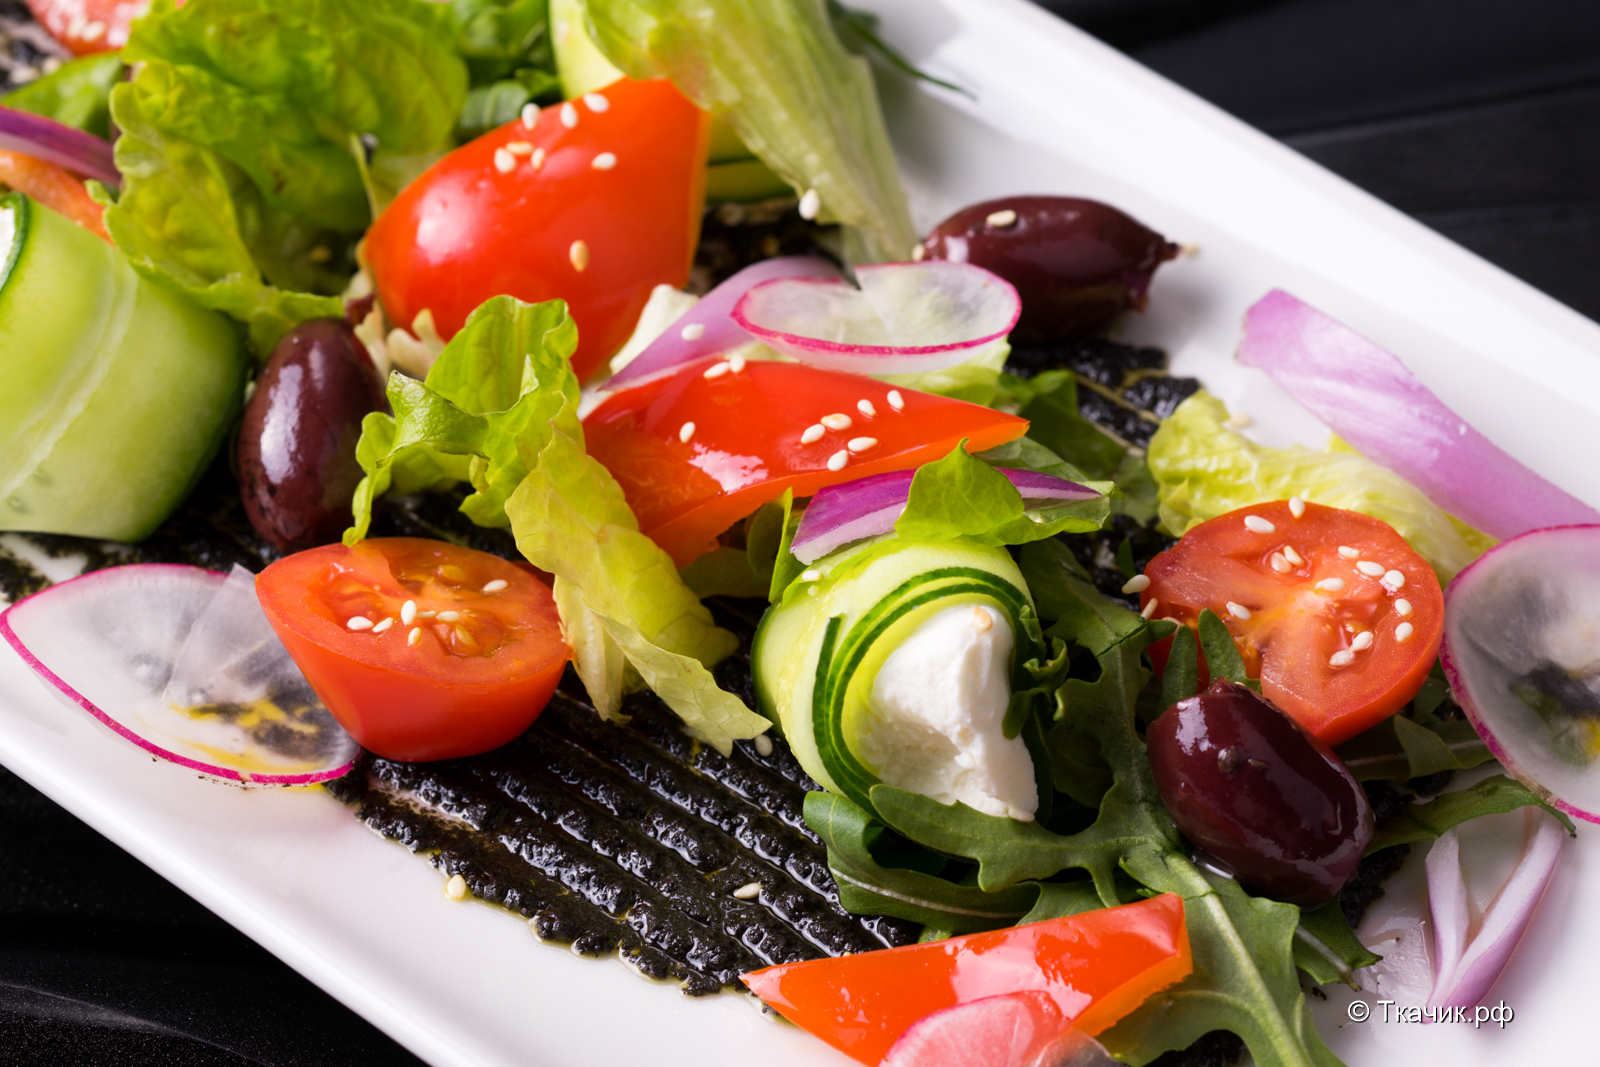 Блюдо из овощей салаты. Салат греческий красивая подача. Салаты в ресторанах. Овощной салат в ресторане. Салат из овощей ресторанная подача.